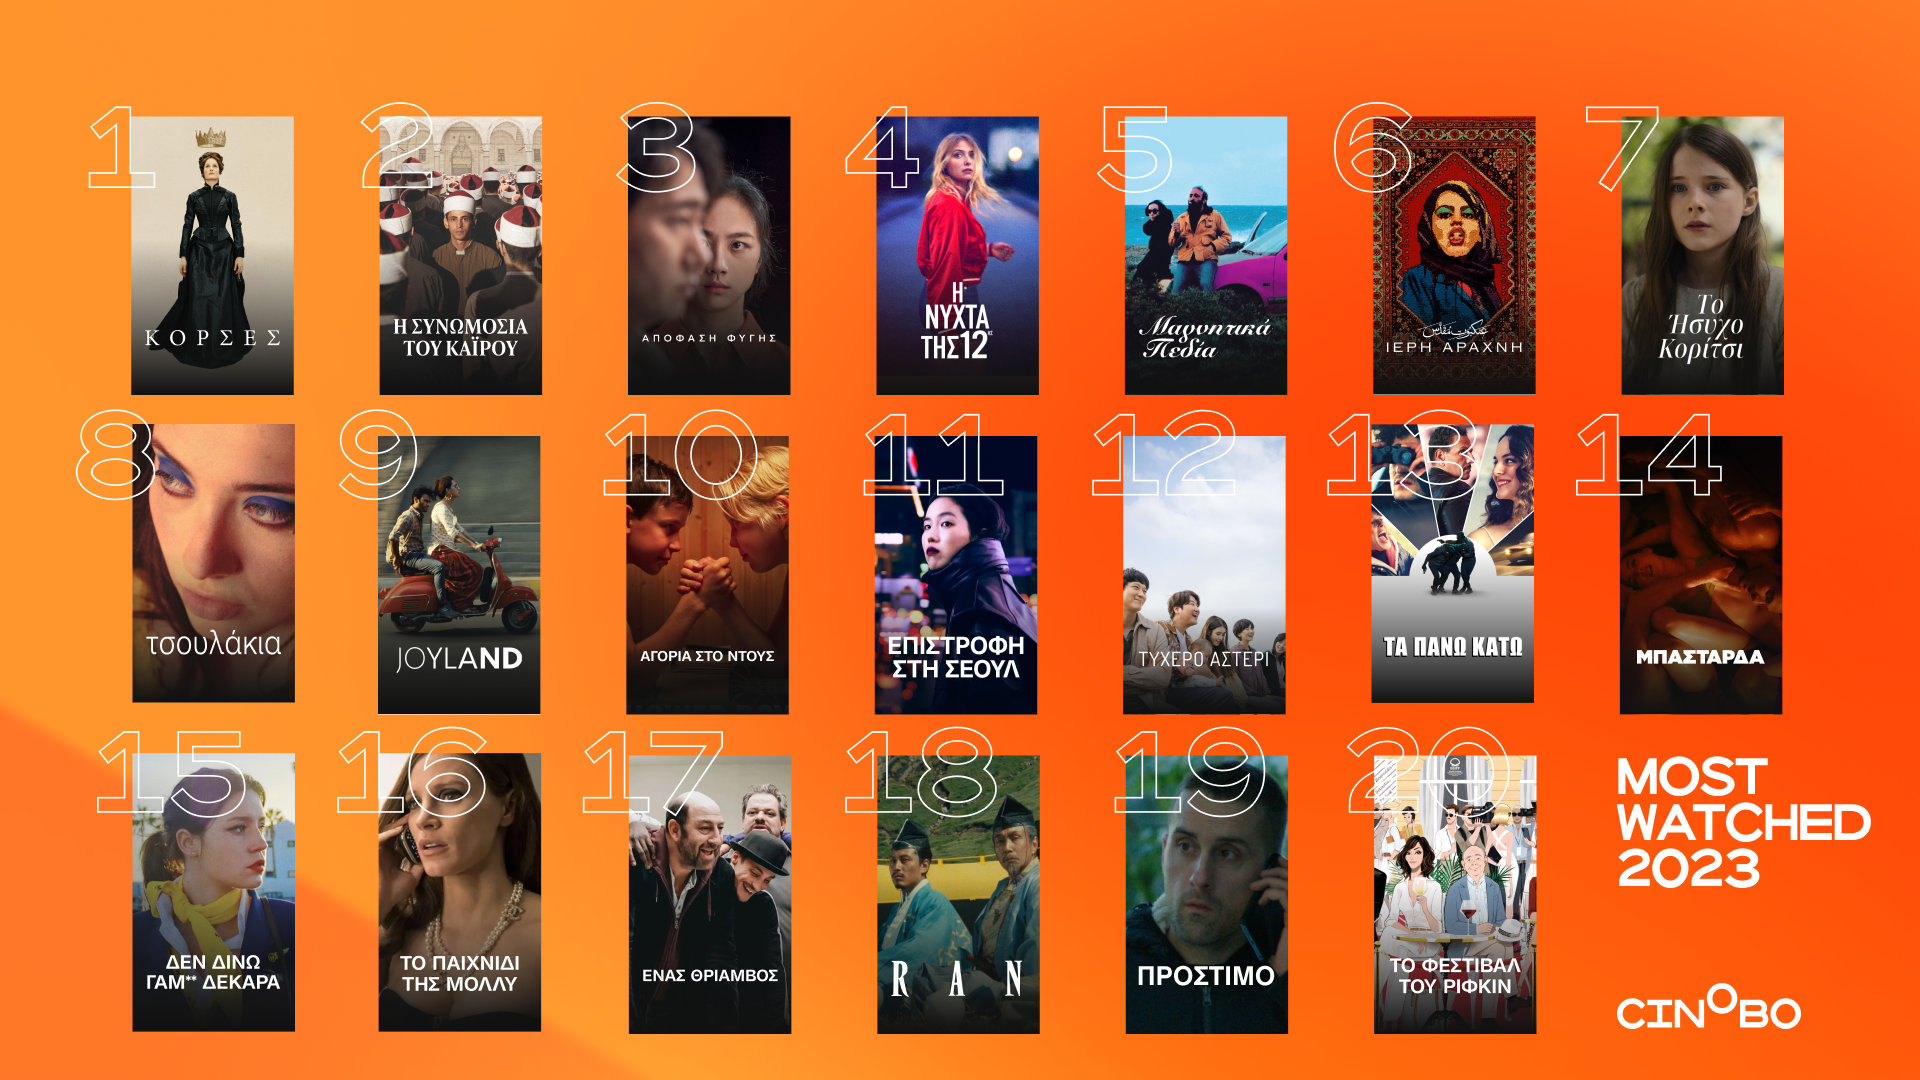 Τα 20+3 του 2023: Οι δημοφιλέστερες ταινίες και σειρές της χρονιάς στο cinobo